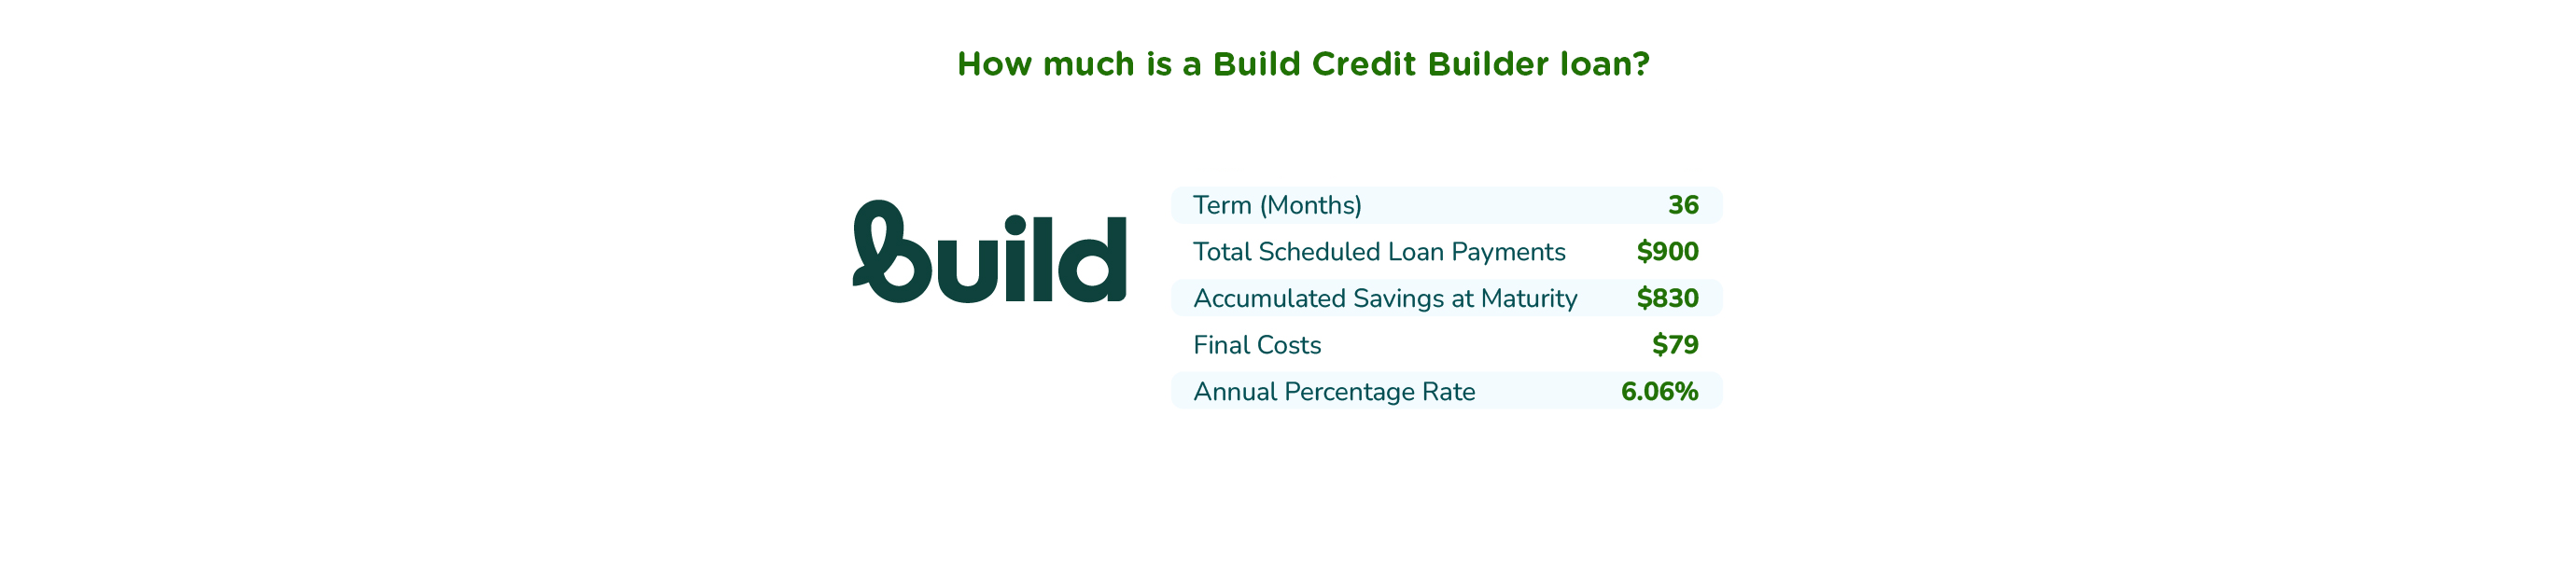 Build Credit cost breakdown